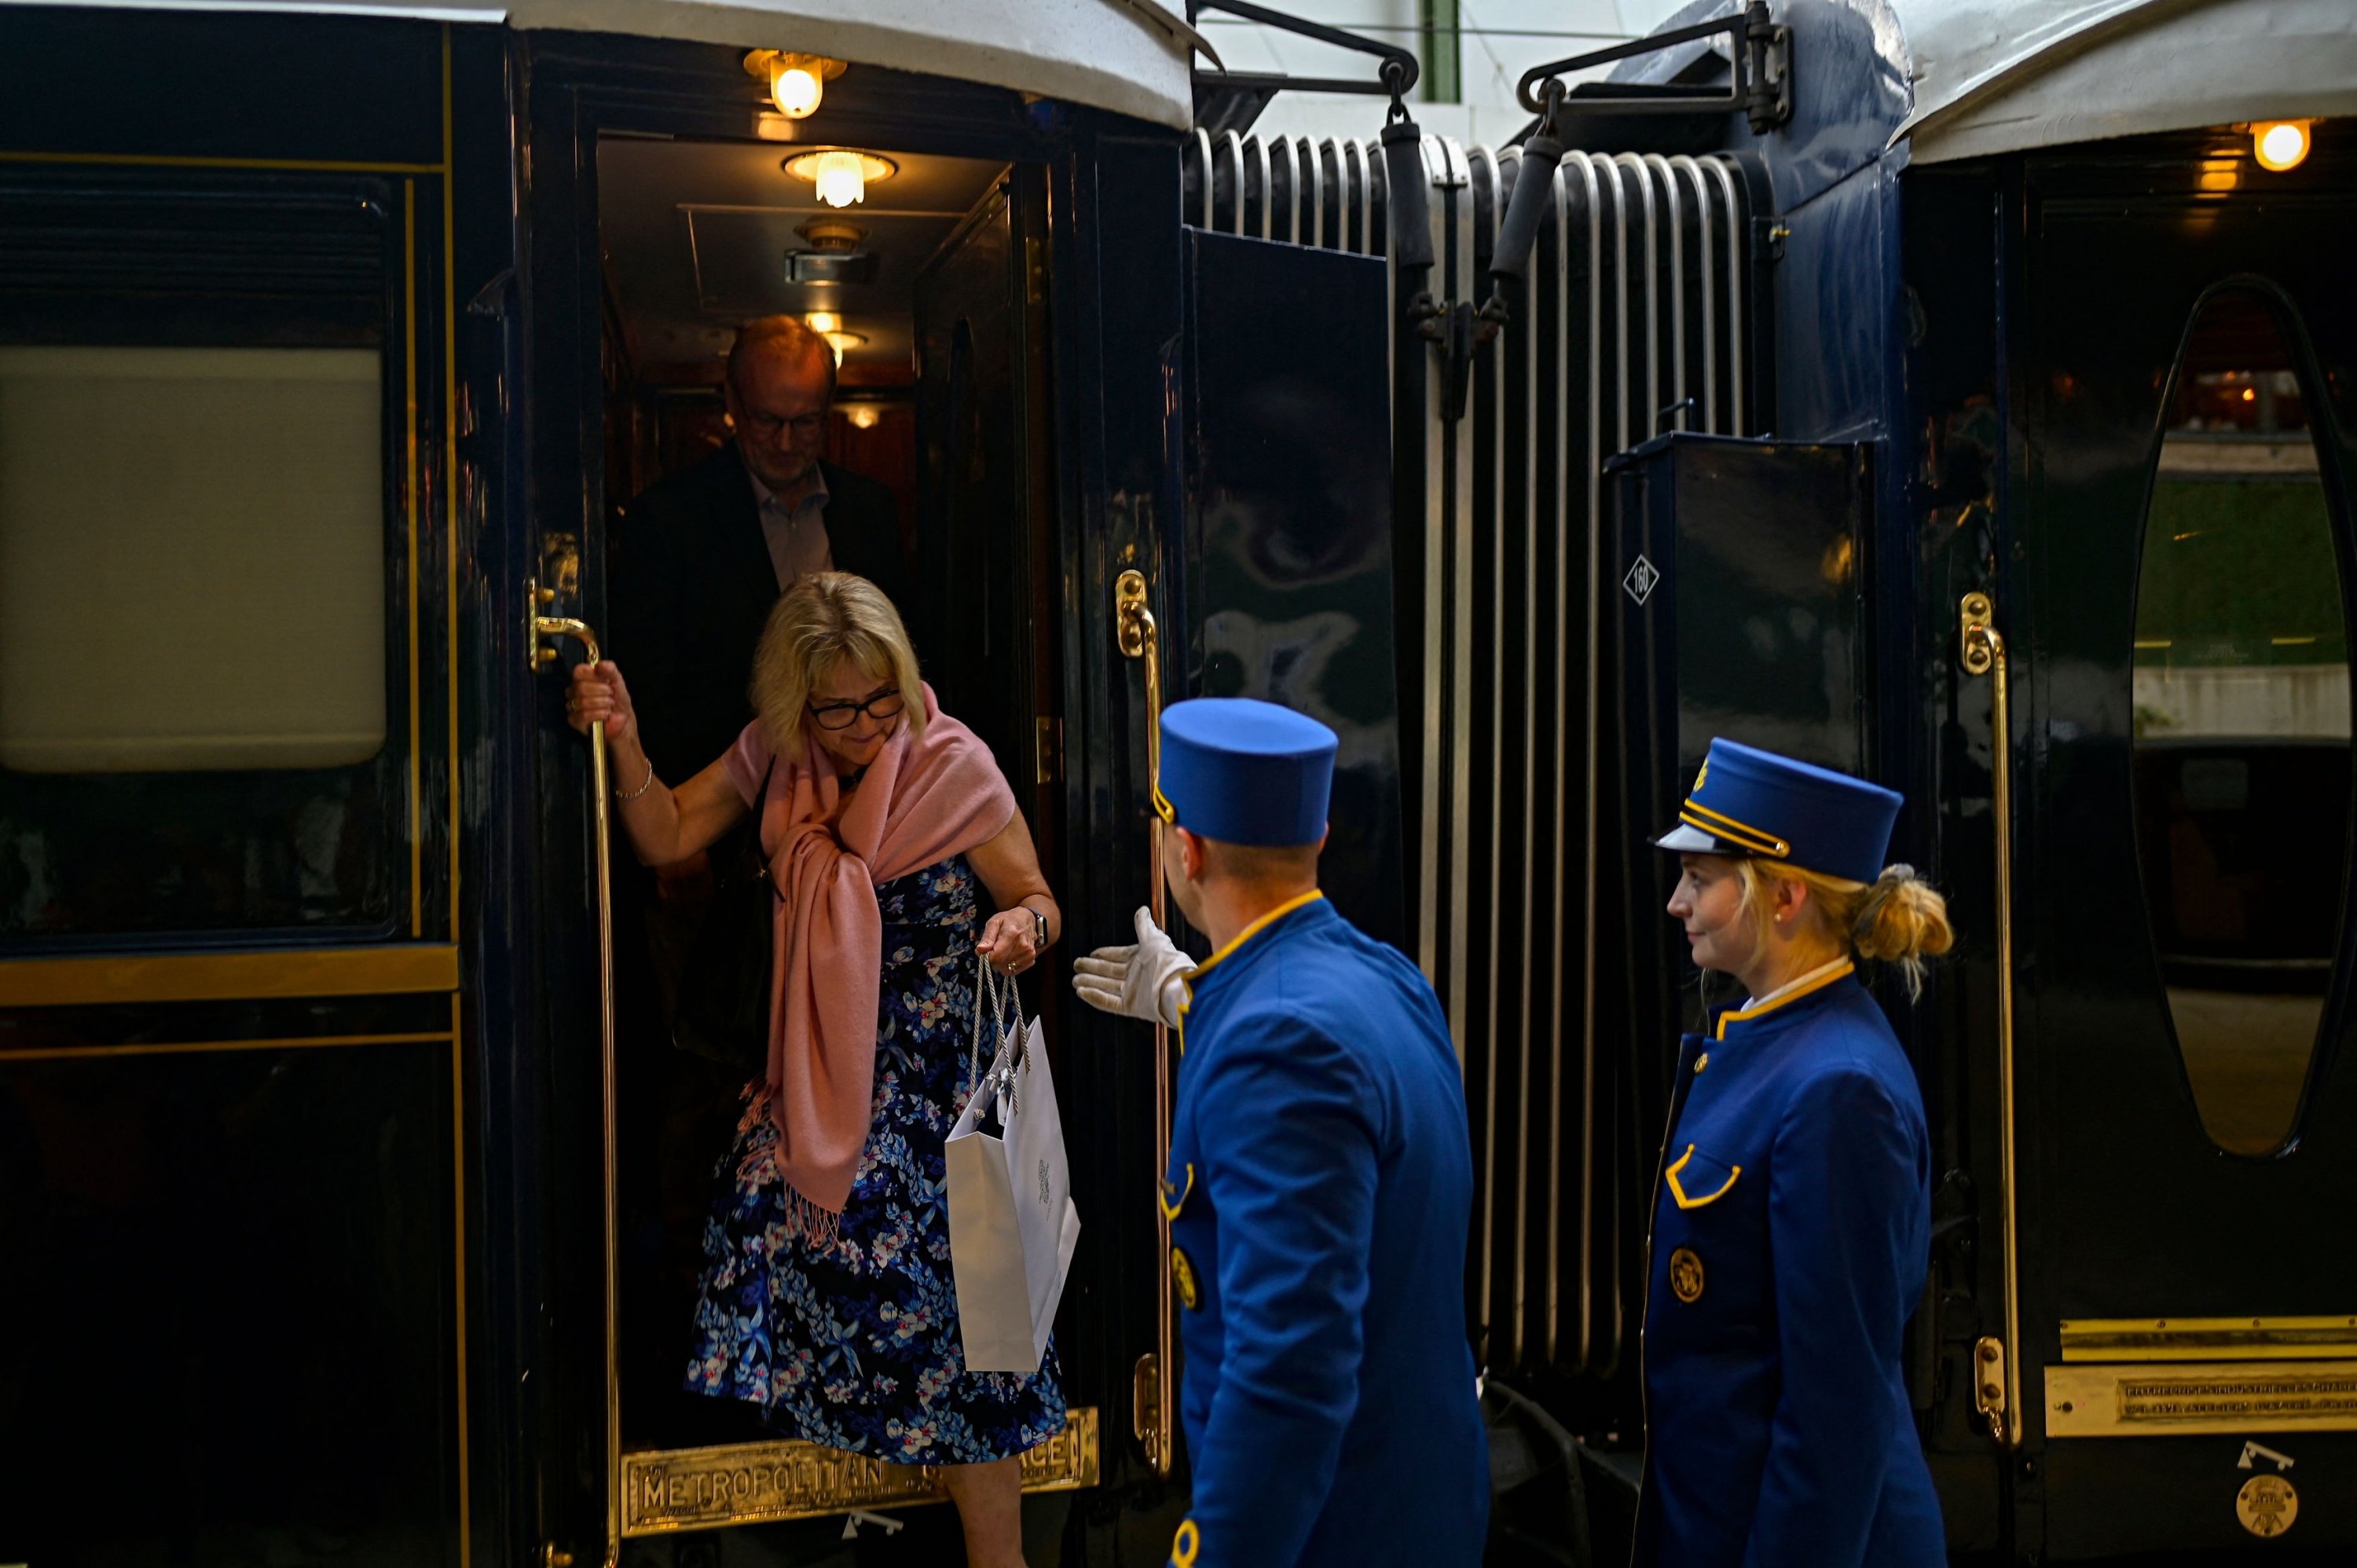 Simplon Orient Express Express Train Passenger Car Set 1